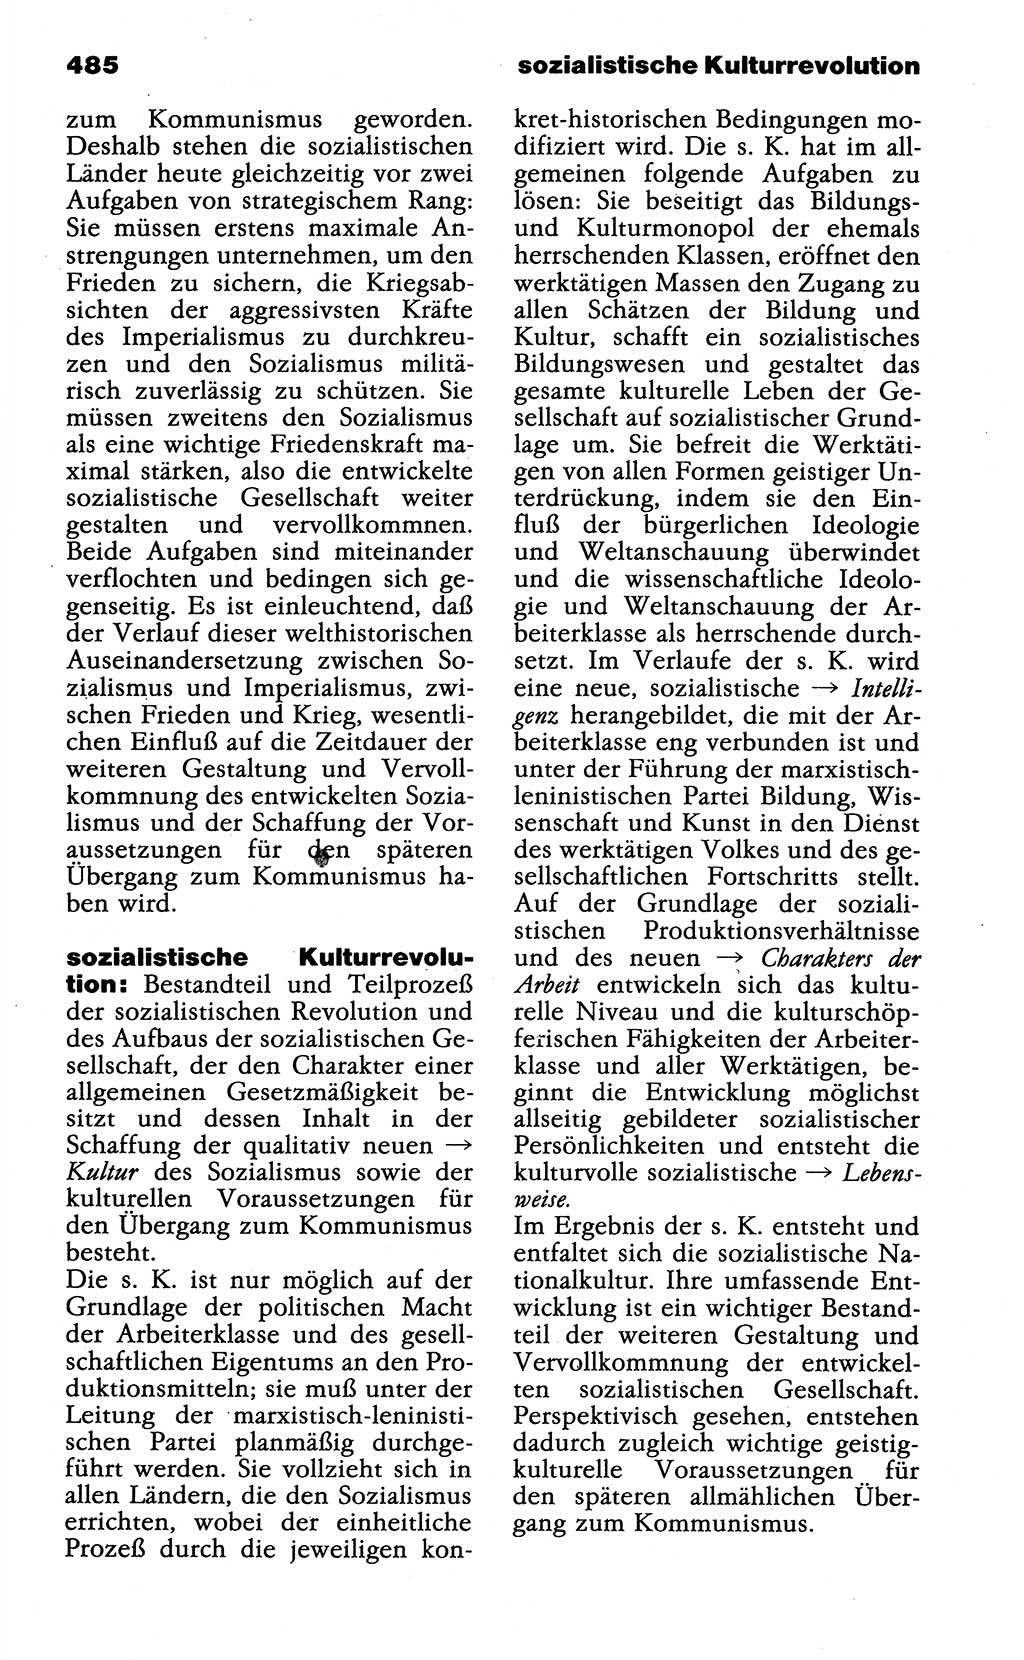 Wörterbuch der marxistisch-leninistischen Philosophie [Deutsche Demokratische Republik (DDR)] 1985, Seite 485 (Wb. ML Phil. DDR 1985, S. 485)